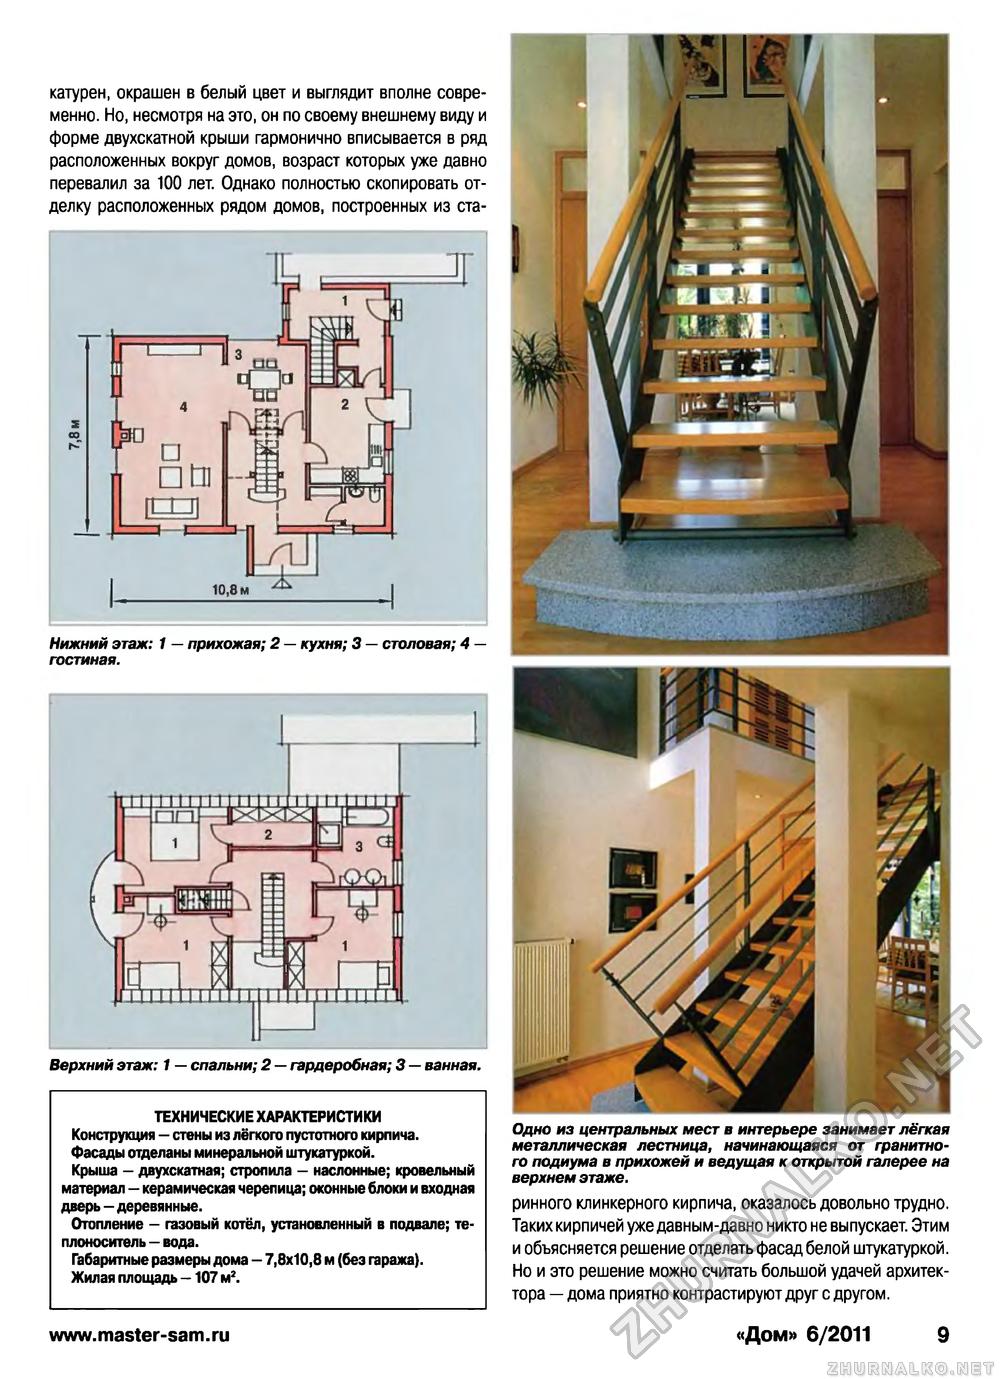 Дом 2011-06, страница 9